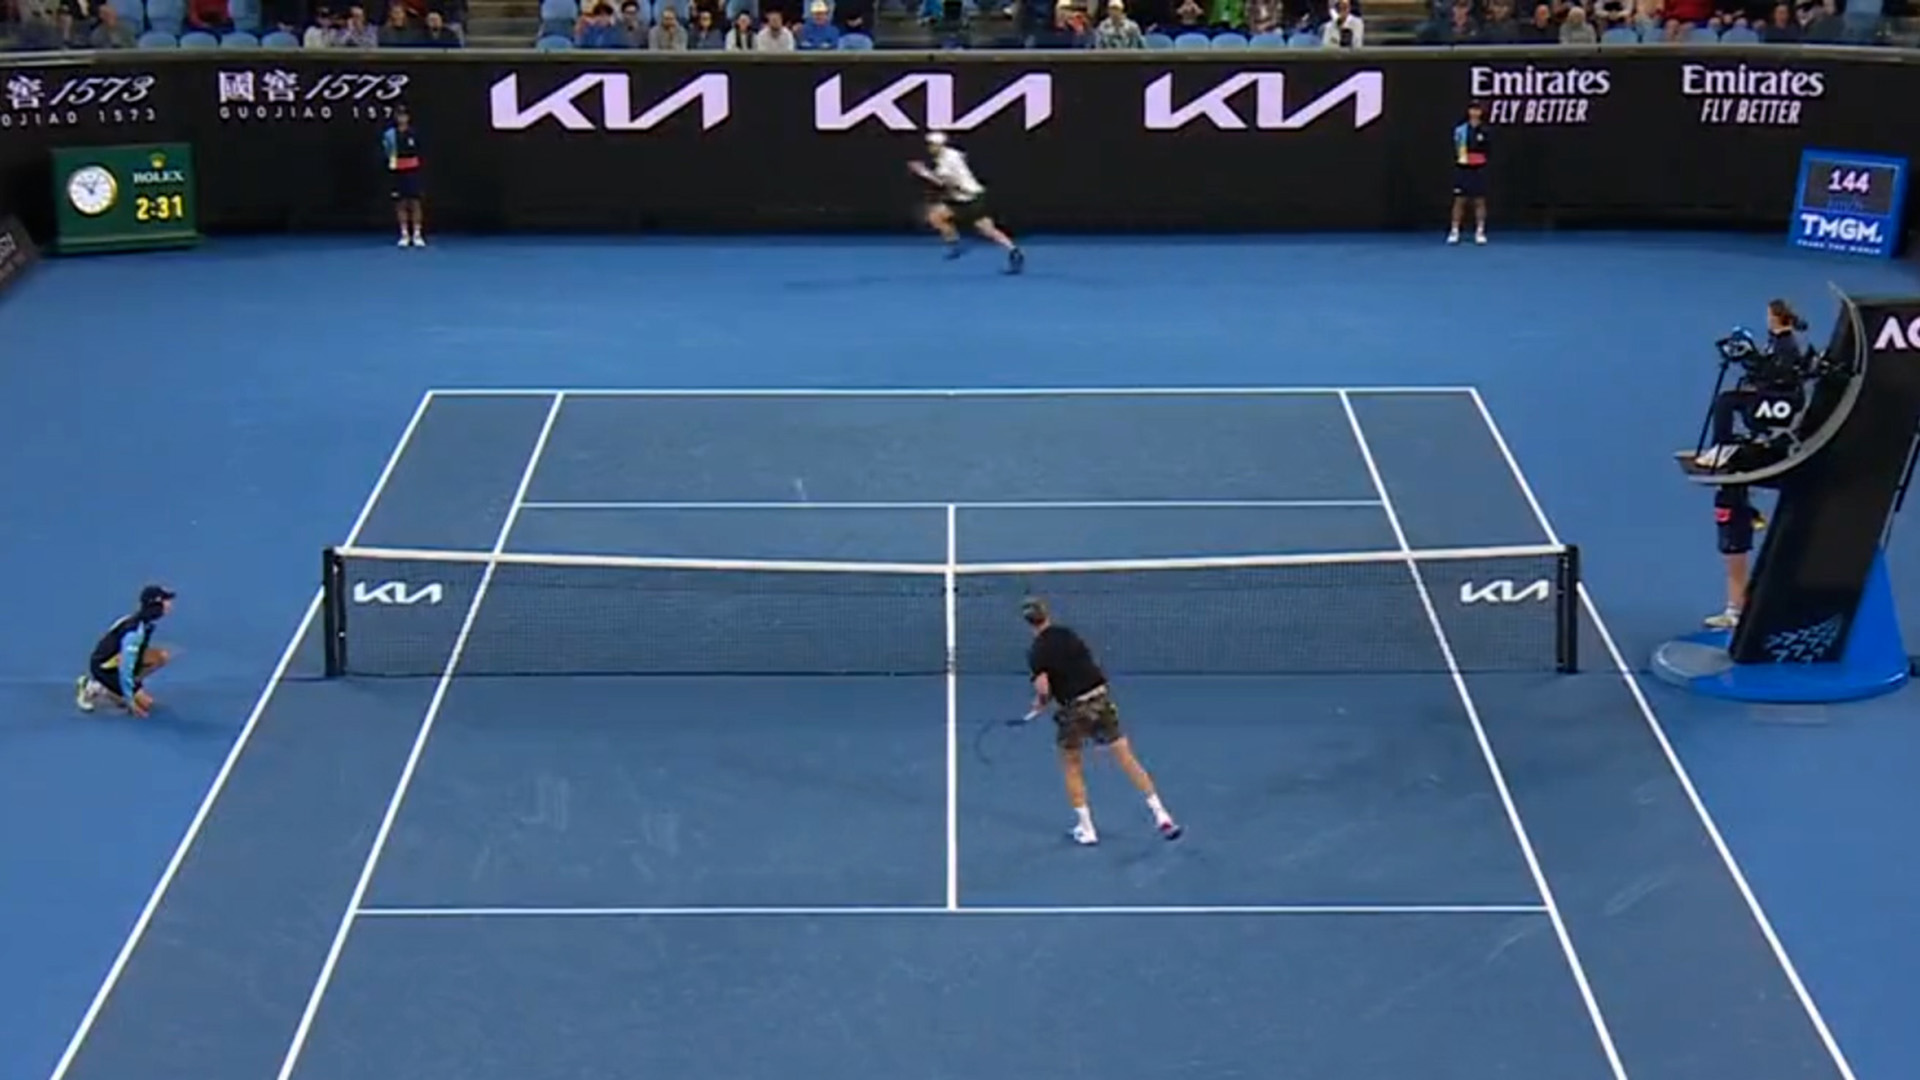 El increíble punto de Andy Murray en su épica remontada ante Kokkinakis en el Australian Open